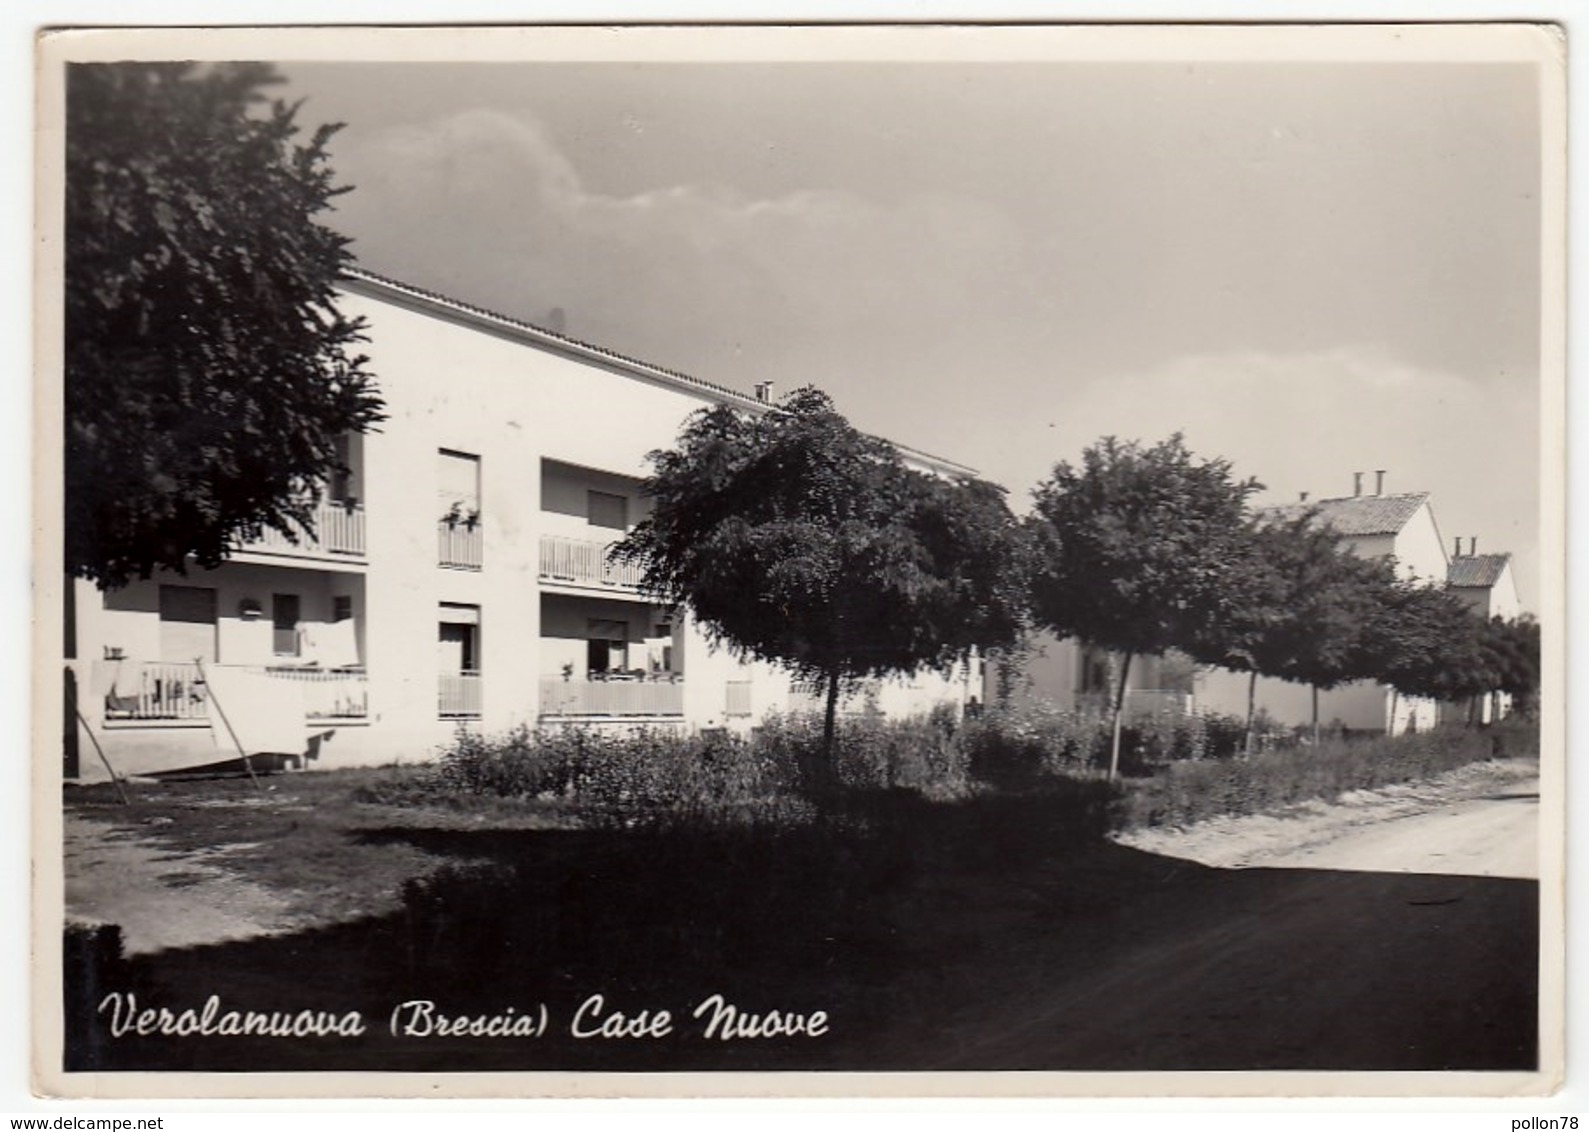 VEROLANUOVA - BRESCIA - CASE NUOVE - 1958 - Brescia